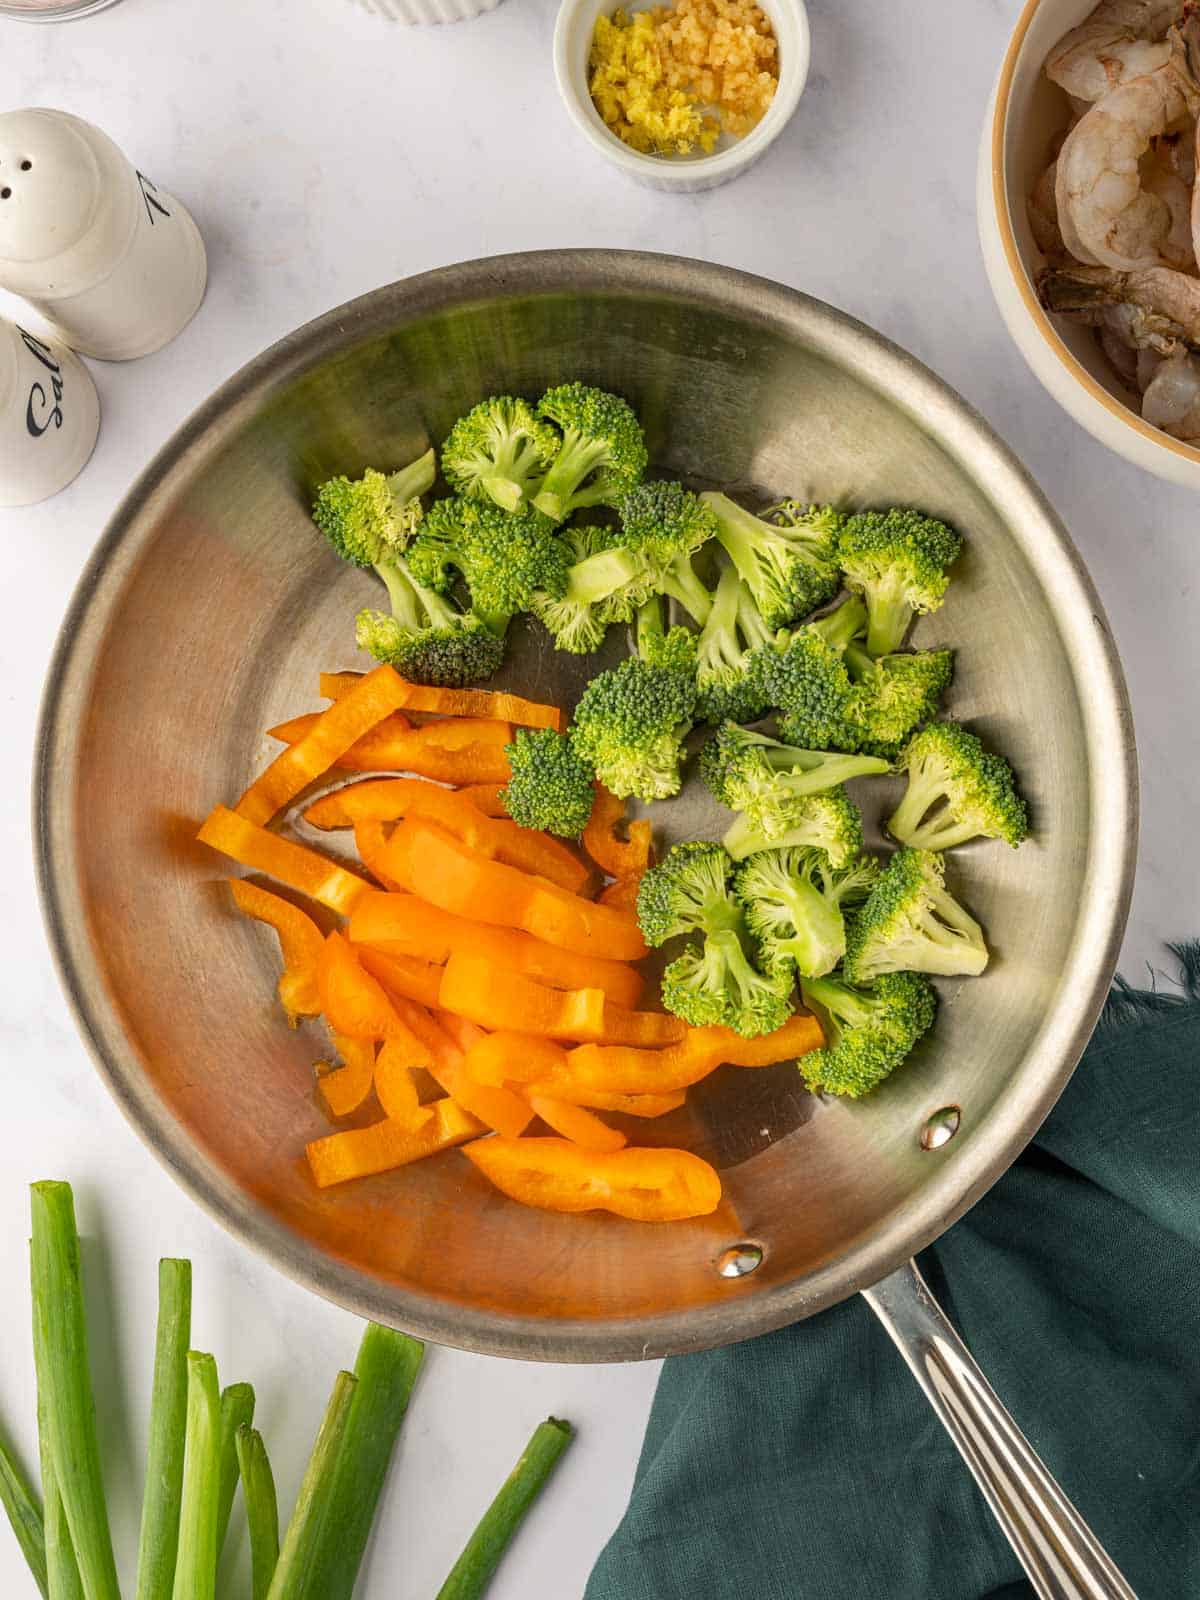 Stir fry vegetables in a skillet.